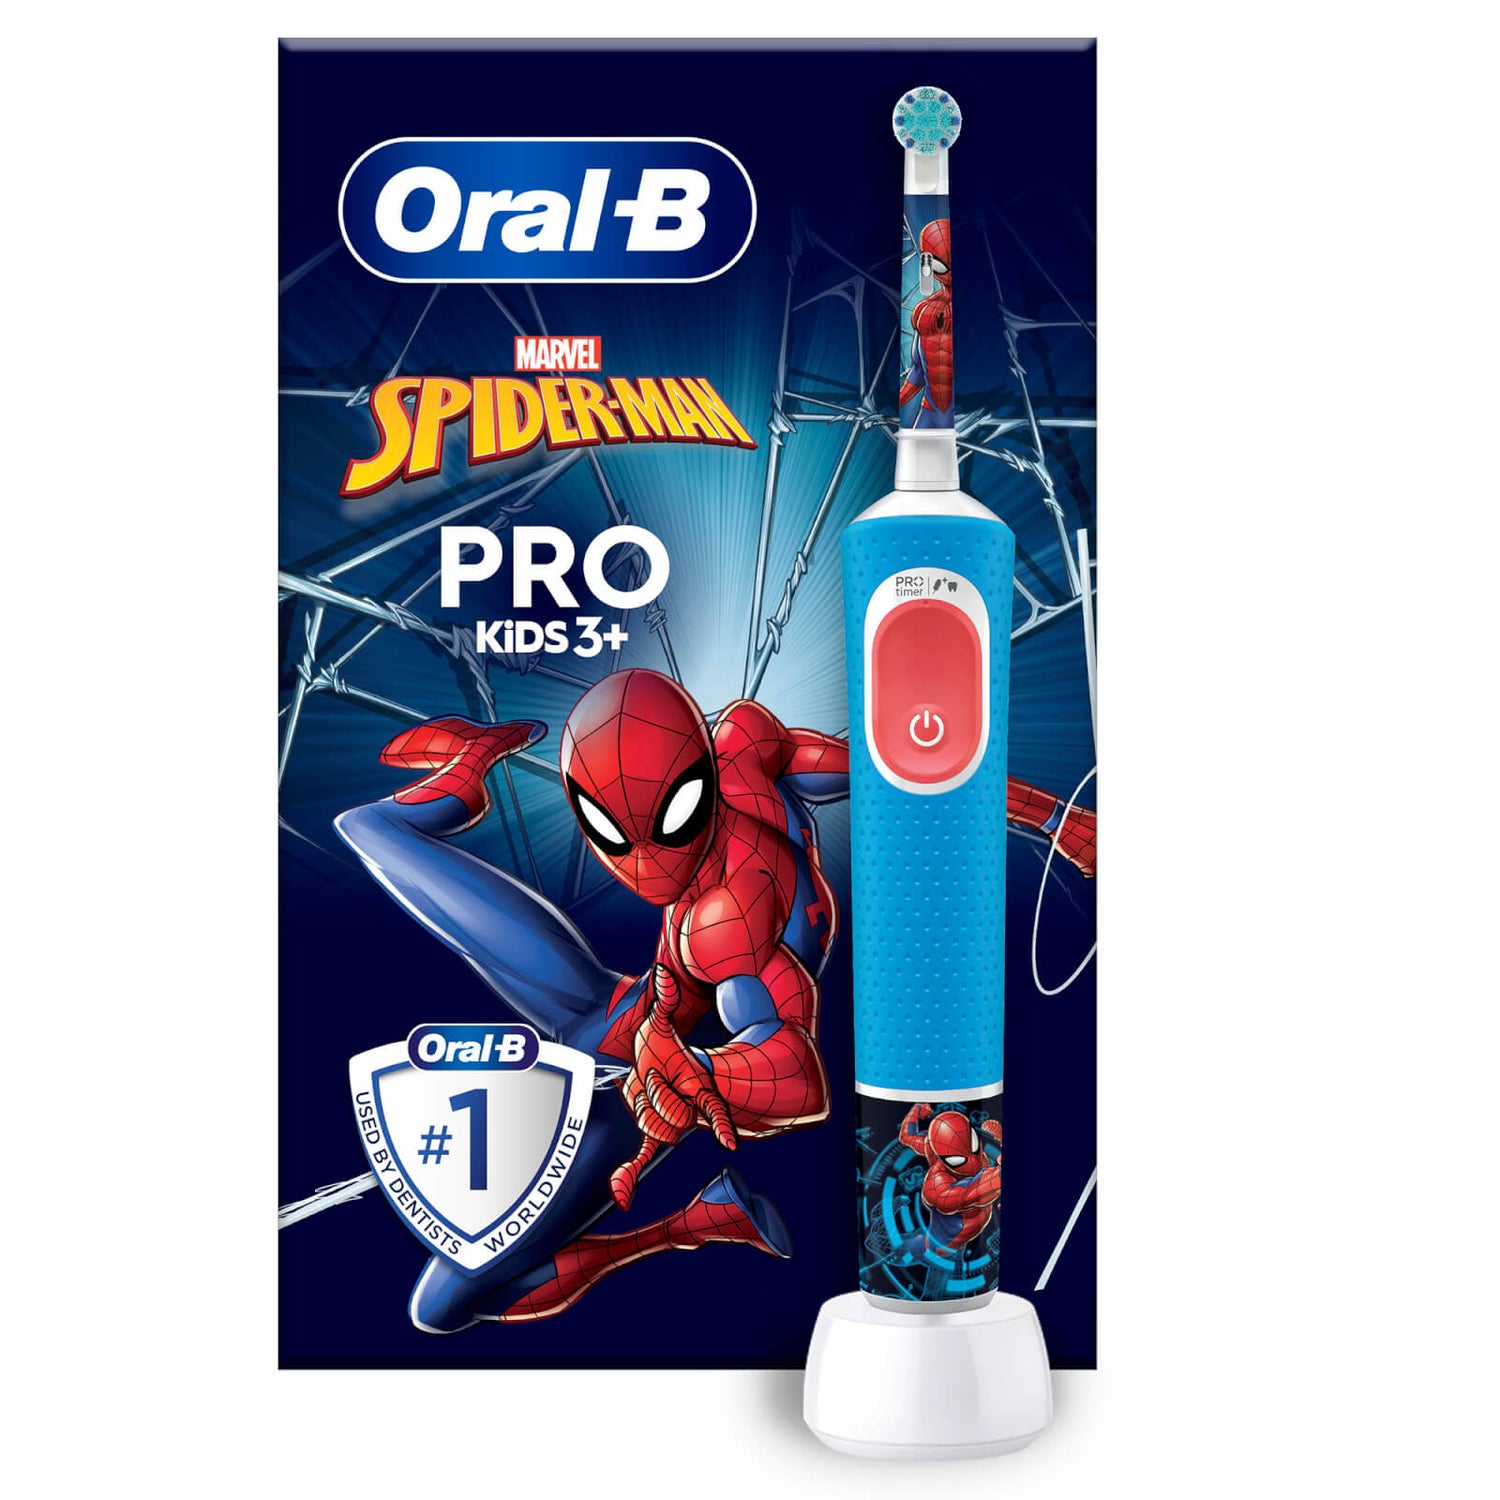 Oral-B Pro Kids Spiderman Elektrische Zahnbürste, Blau/Rot